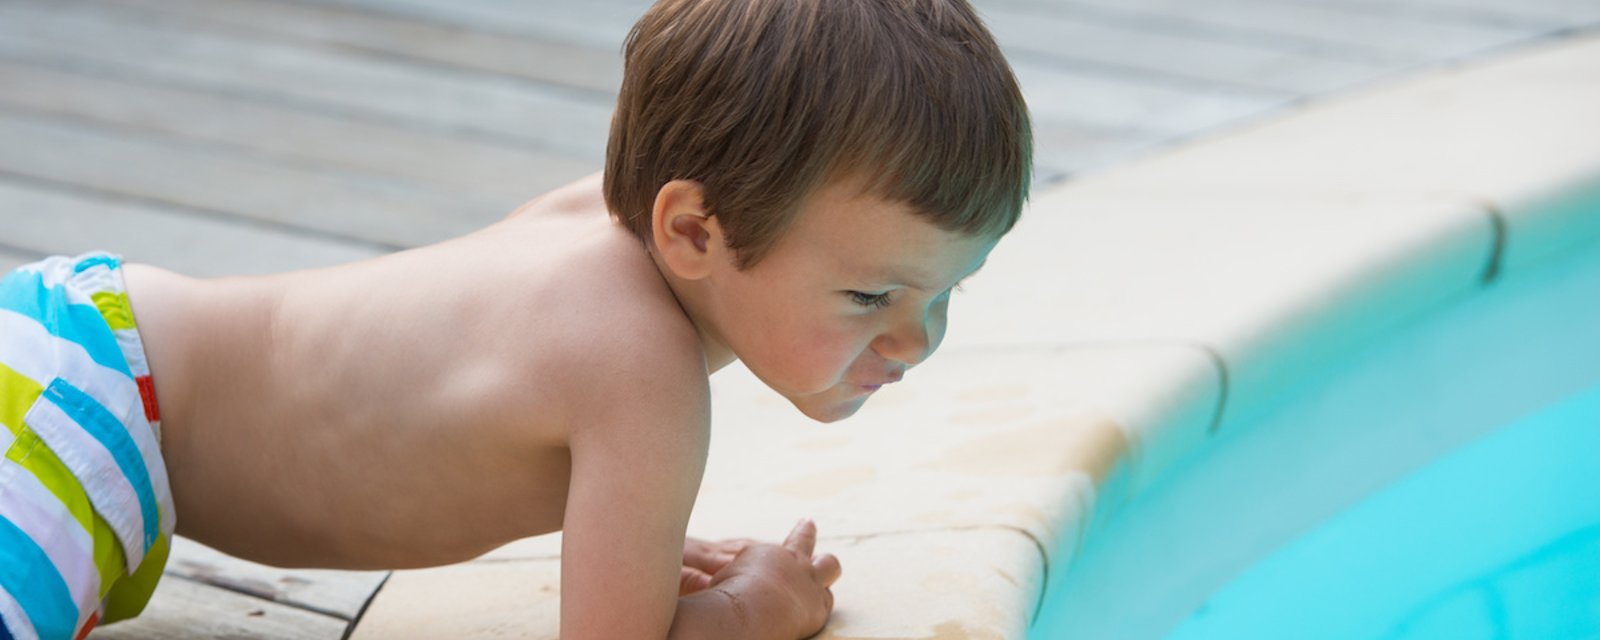 Cet été, une alarme dans votre piscine pourrait sauver des vies!